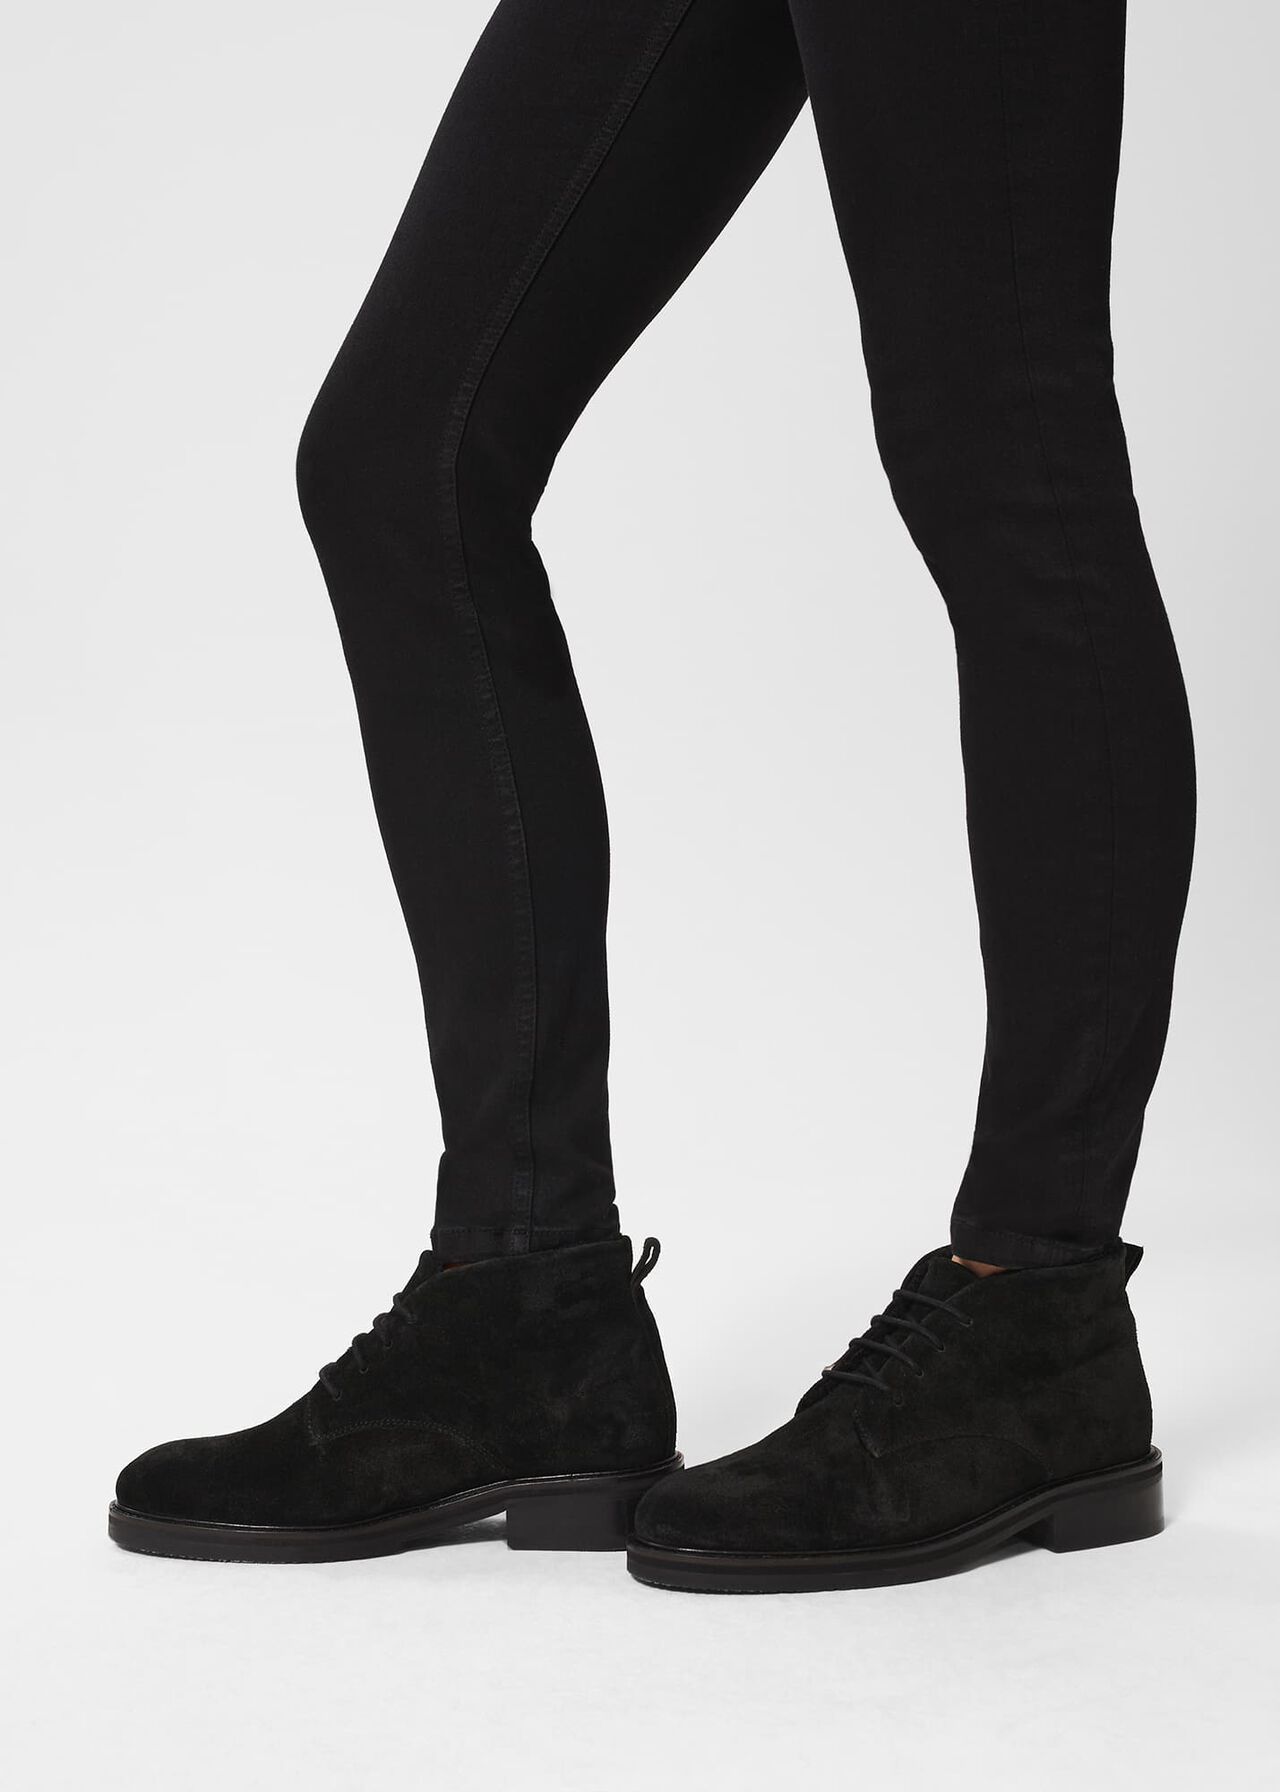 Agnes Fur Boots, Black, hi-res